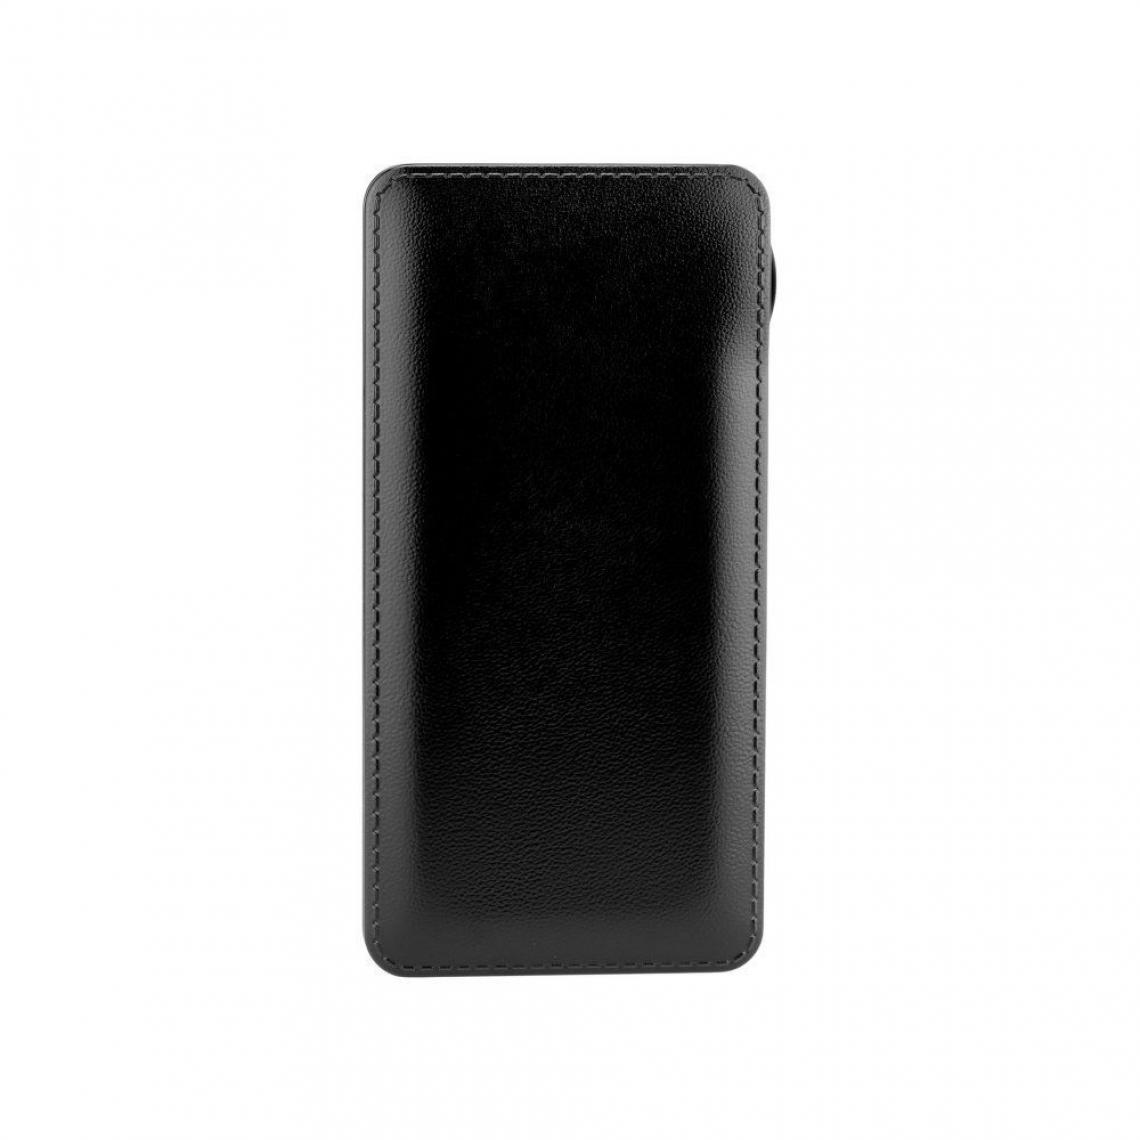 Ozzzo - Chargeur batterie externe 20000 mAh powerbank ozzzo noir pour Xiaomi Redmi 4 - Autres accessoires smartphone